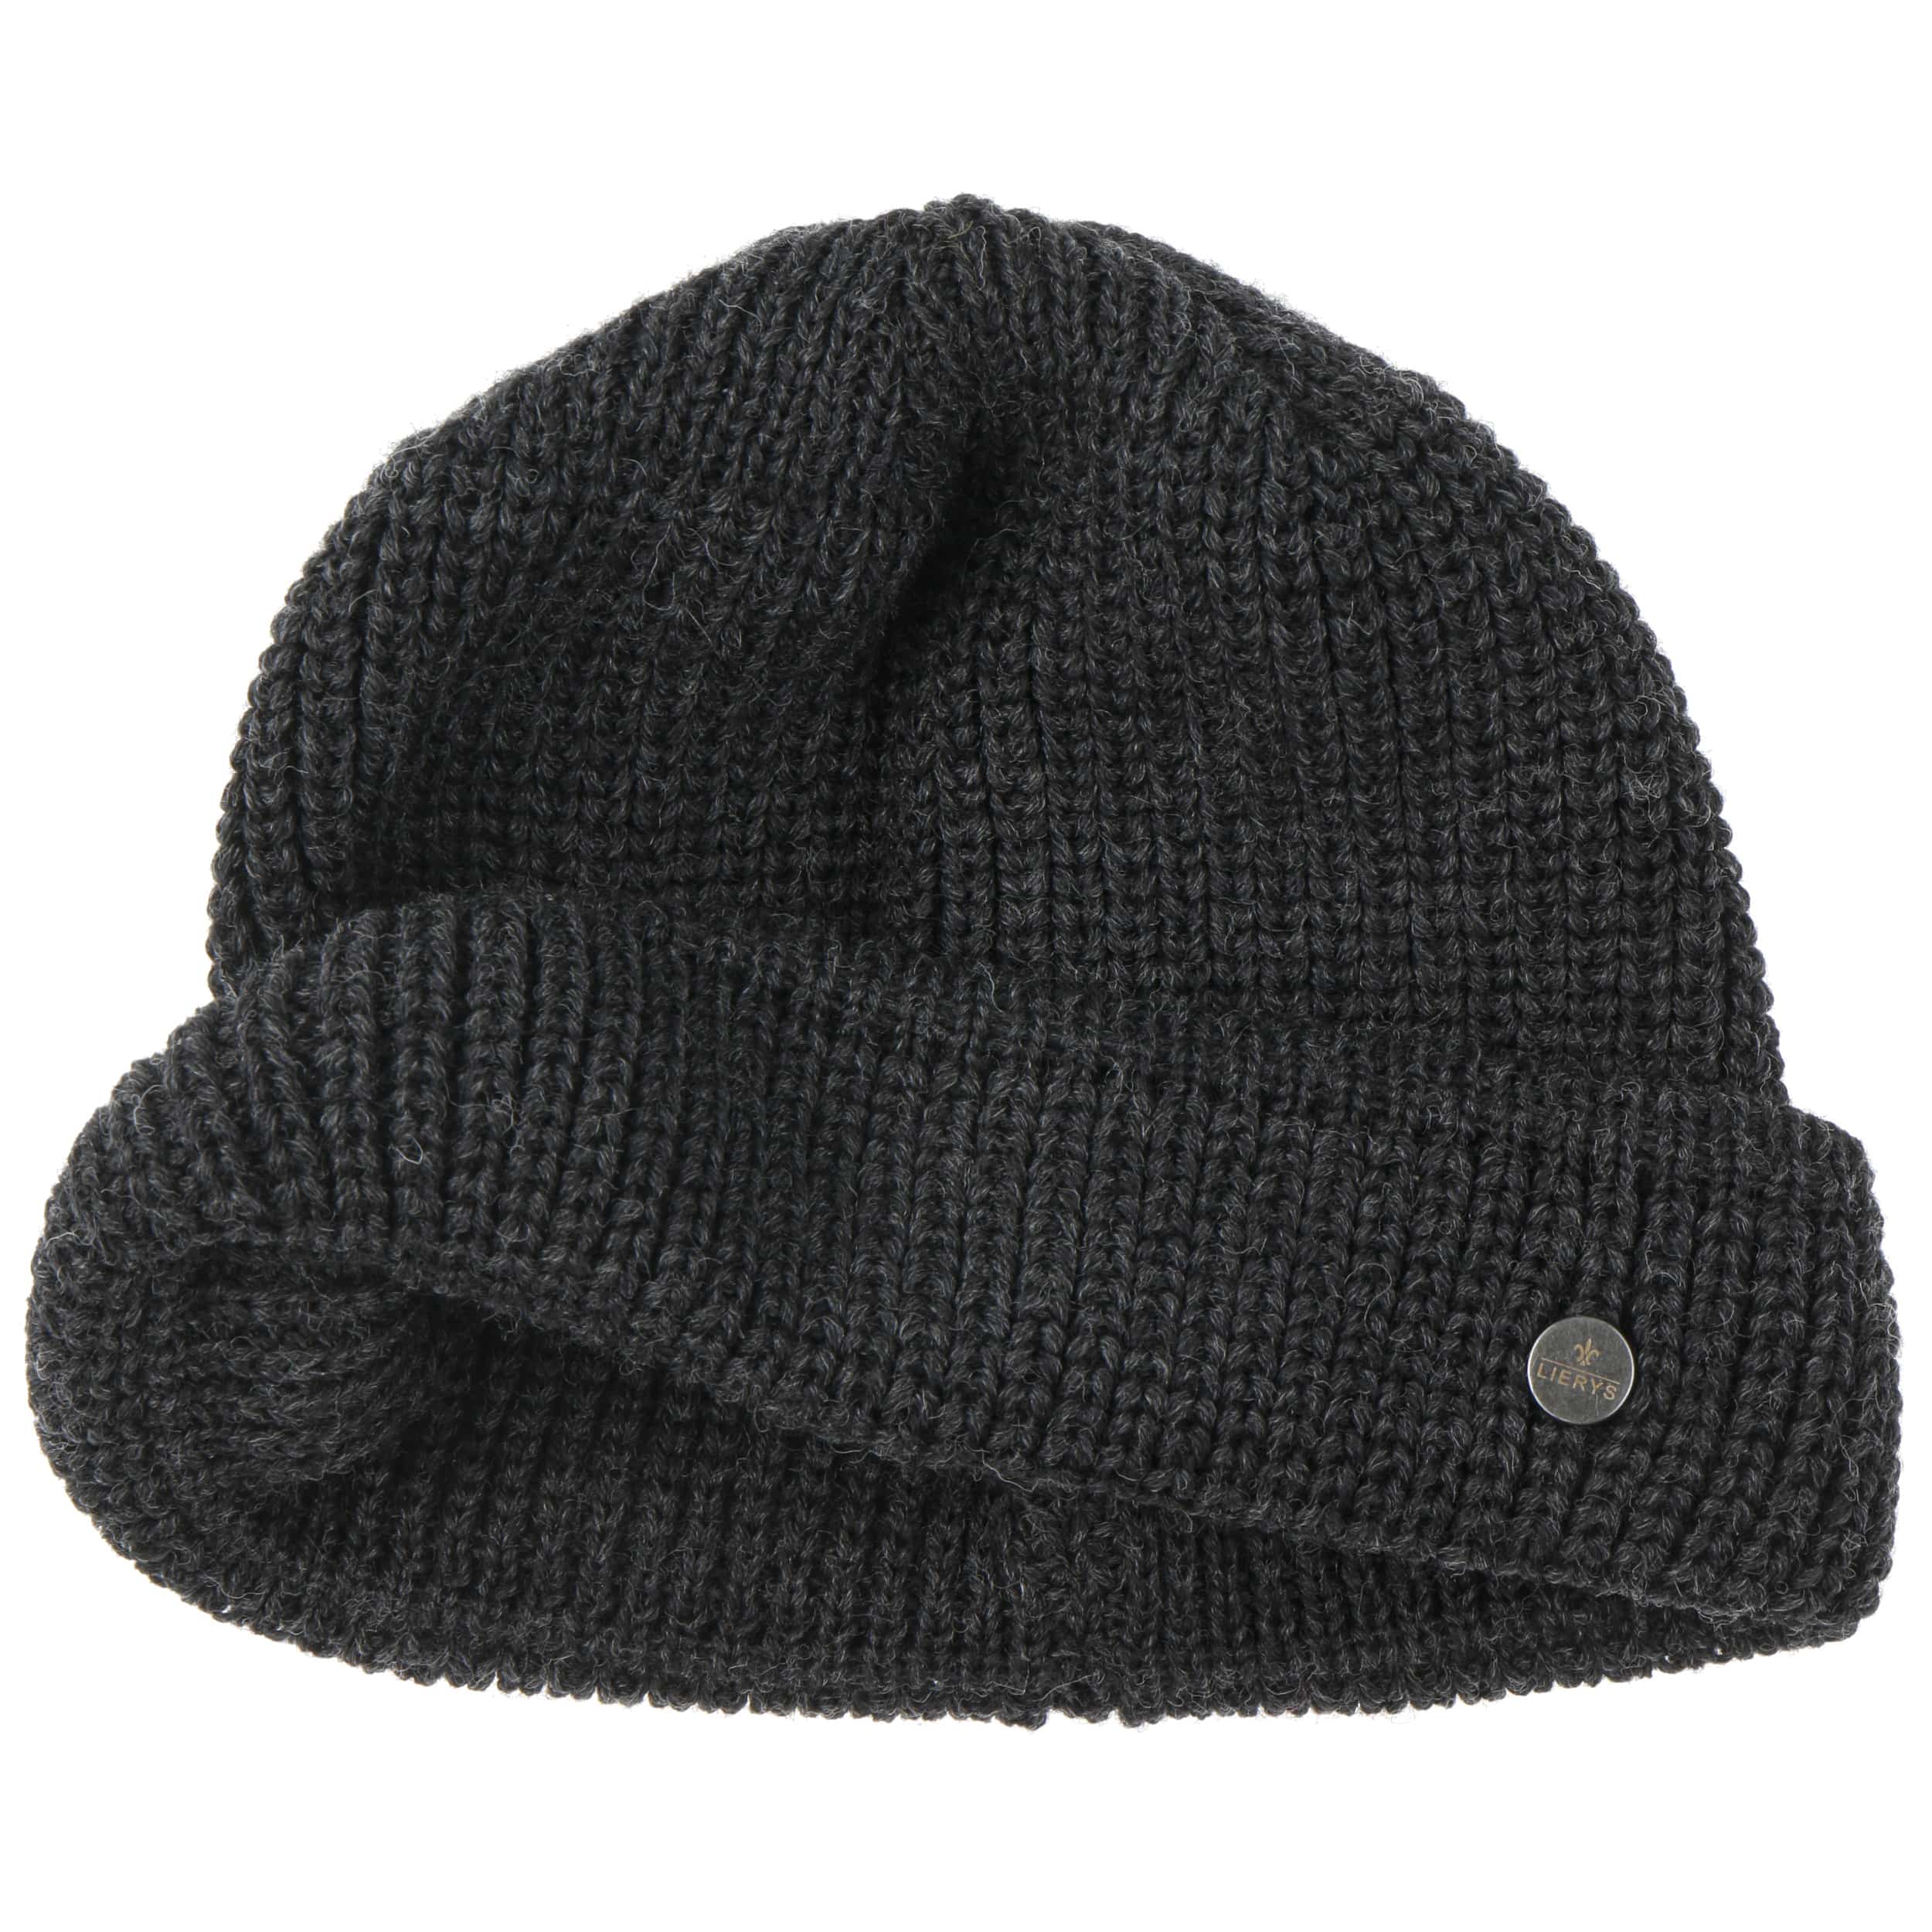 Costa Knit Docker Hat by Lierys - 49,95